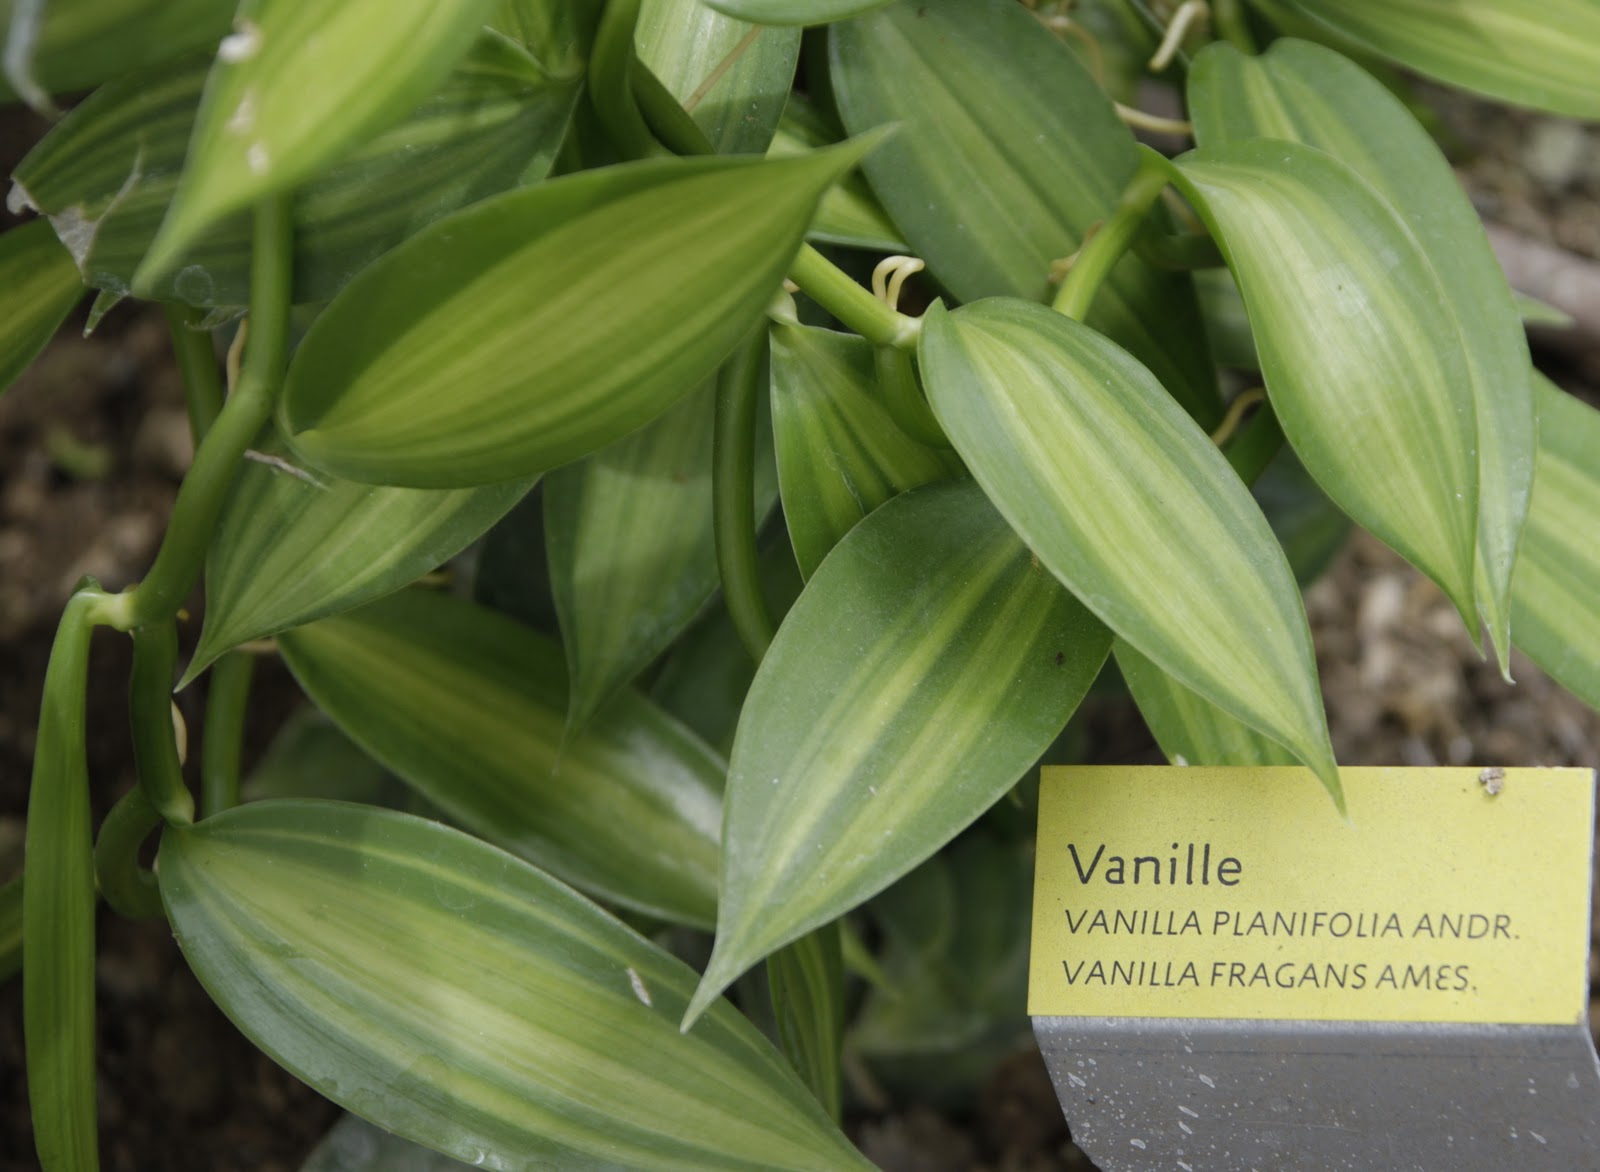 Ваниль плосколистная (Vanilla planifolia). Ваниль стручковая как растет. Myrcianthes fragans. Ванильные язычки.